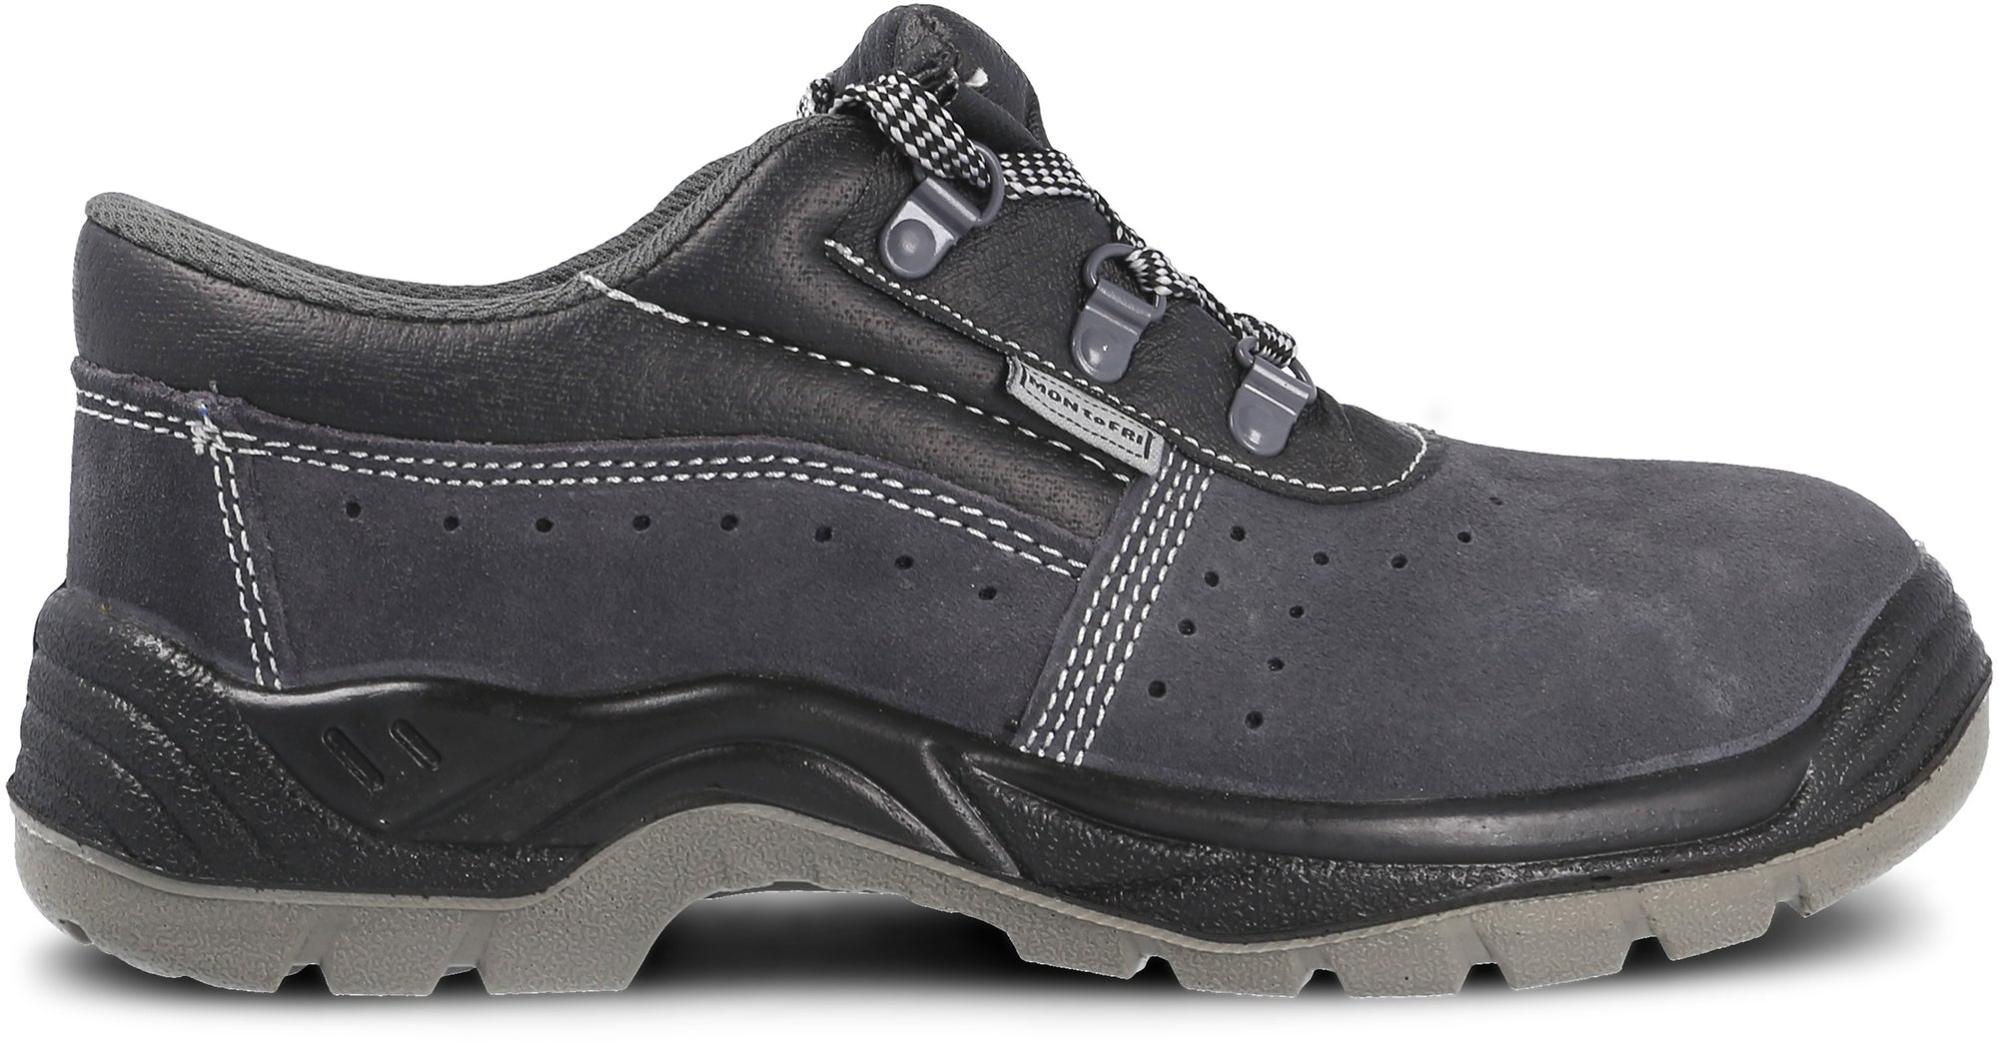 Zapato seguridad paredes, zp1002 serraje gris, s1p talla 41